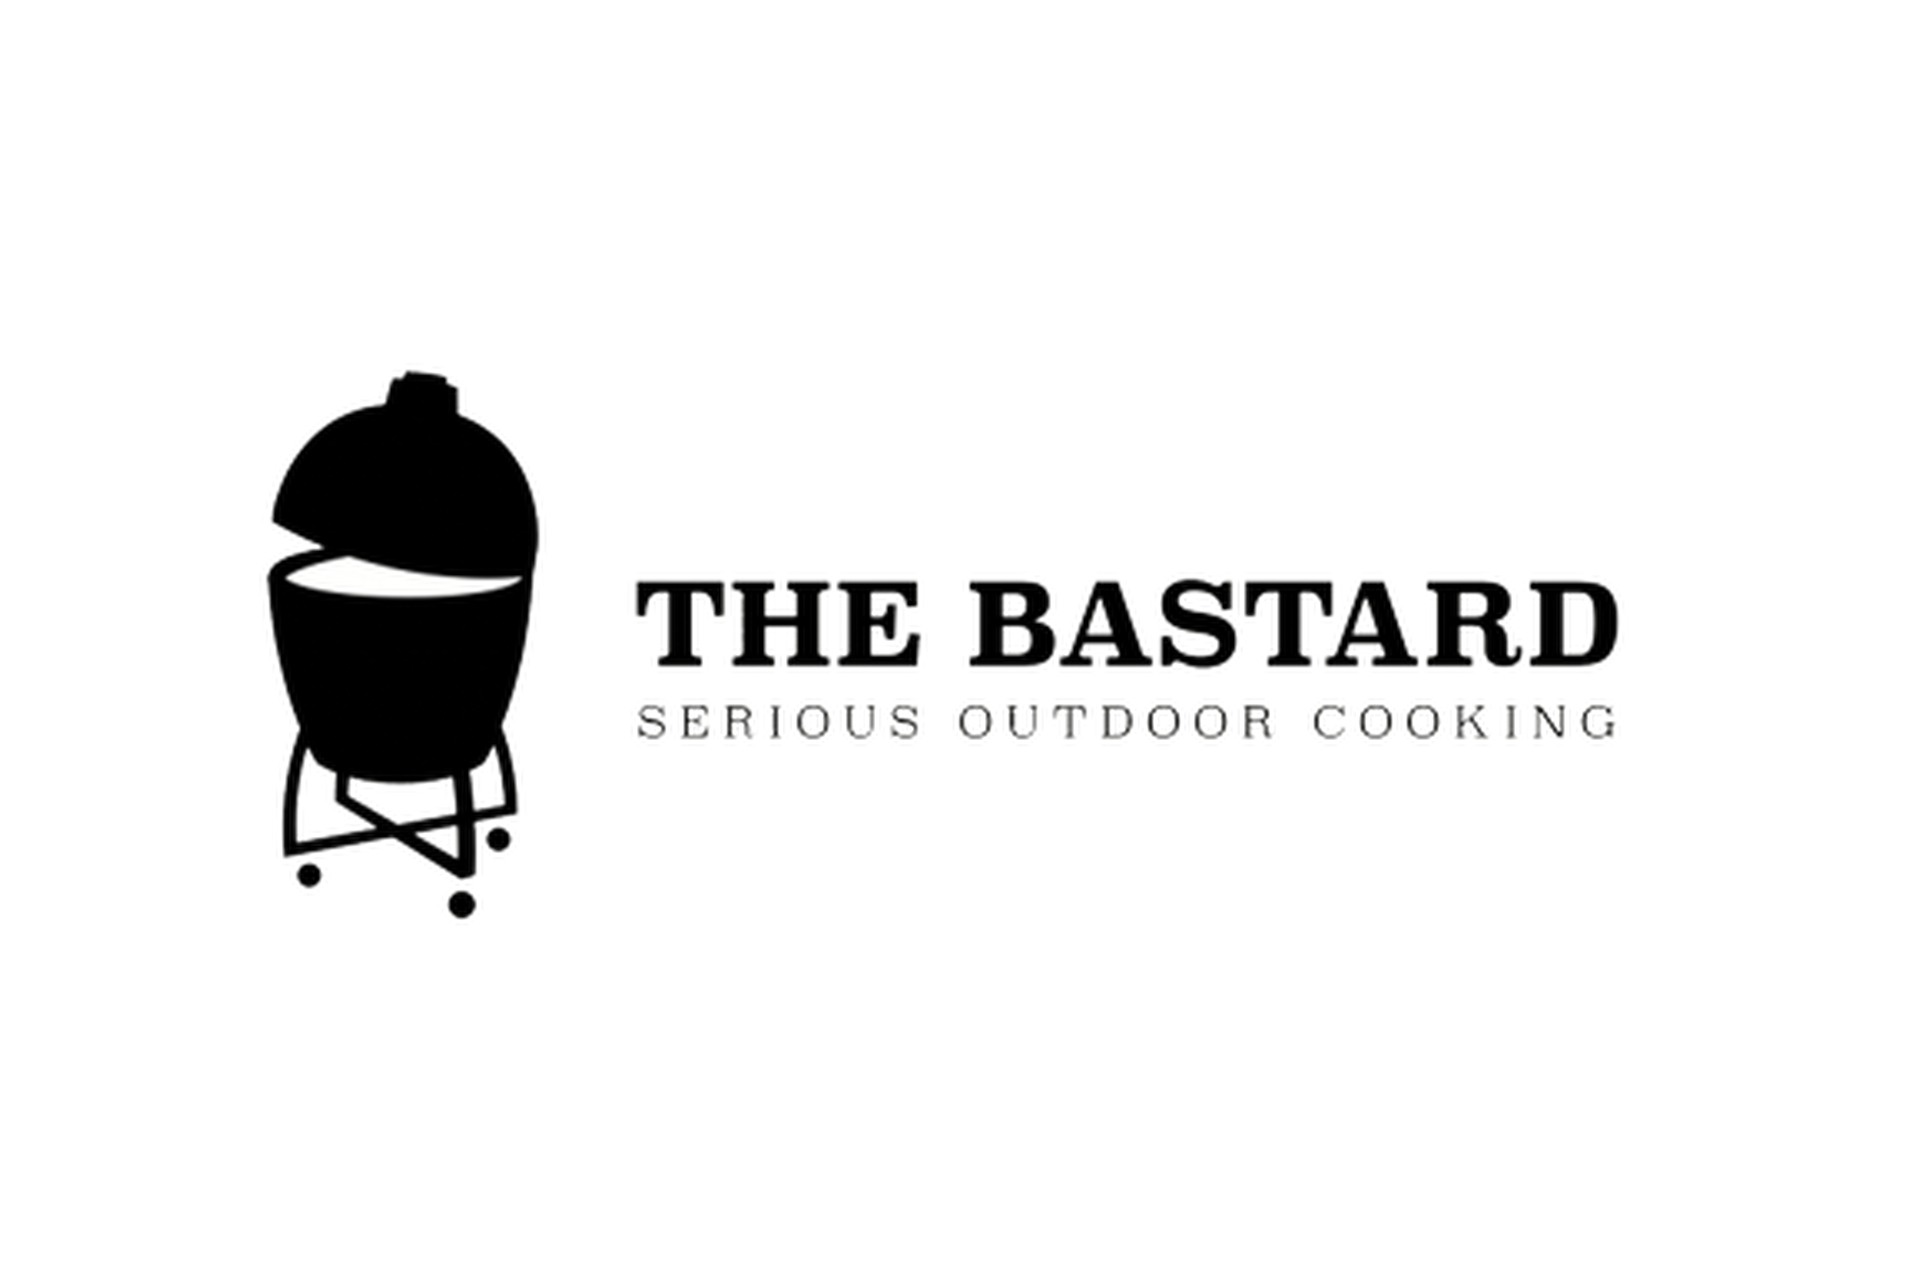 THE BASTARD